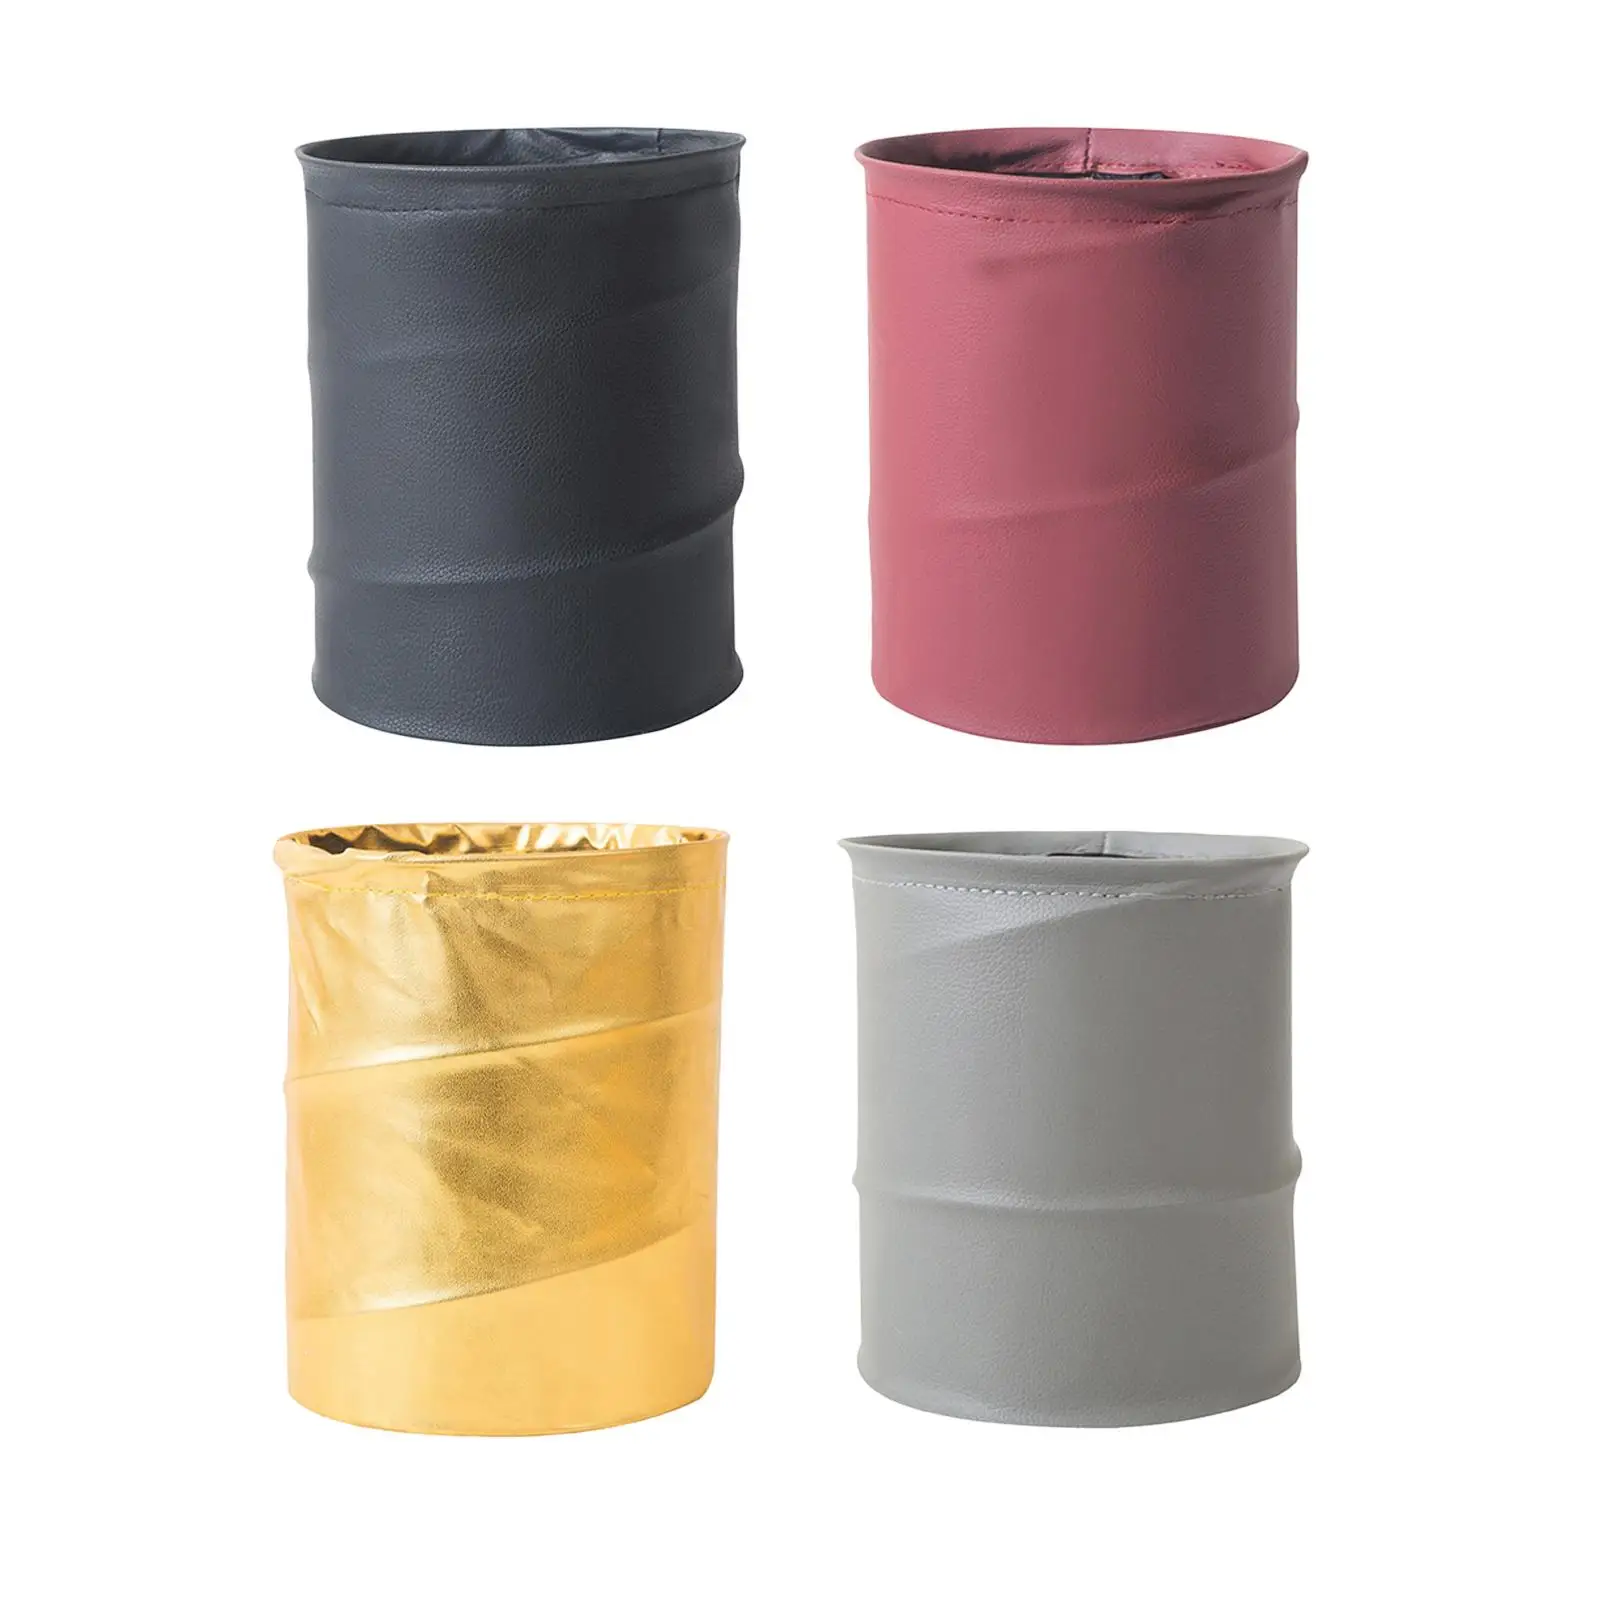 Portable Car Trash Can, Waterproof PU Leather Collapsible Garbage Bin, organizer Bag, Waste Basket